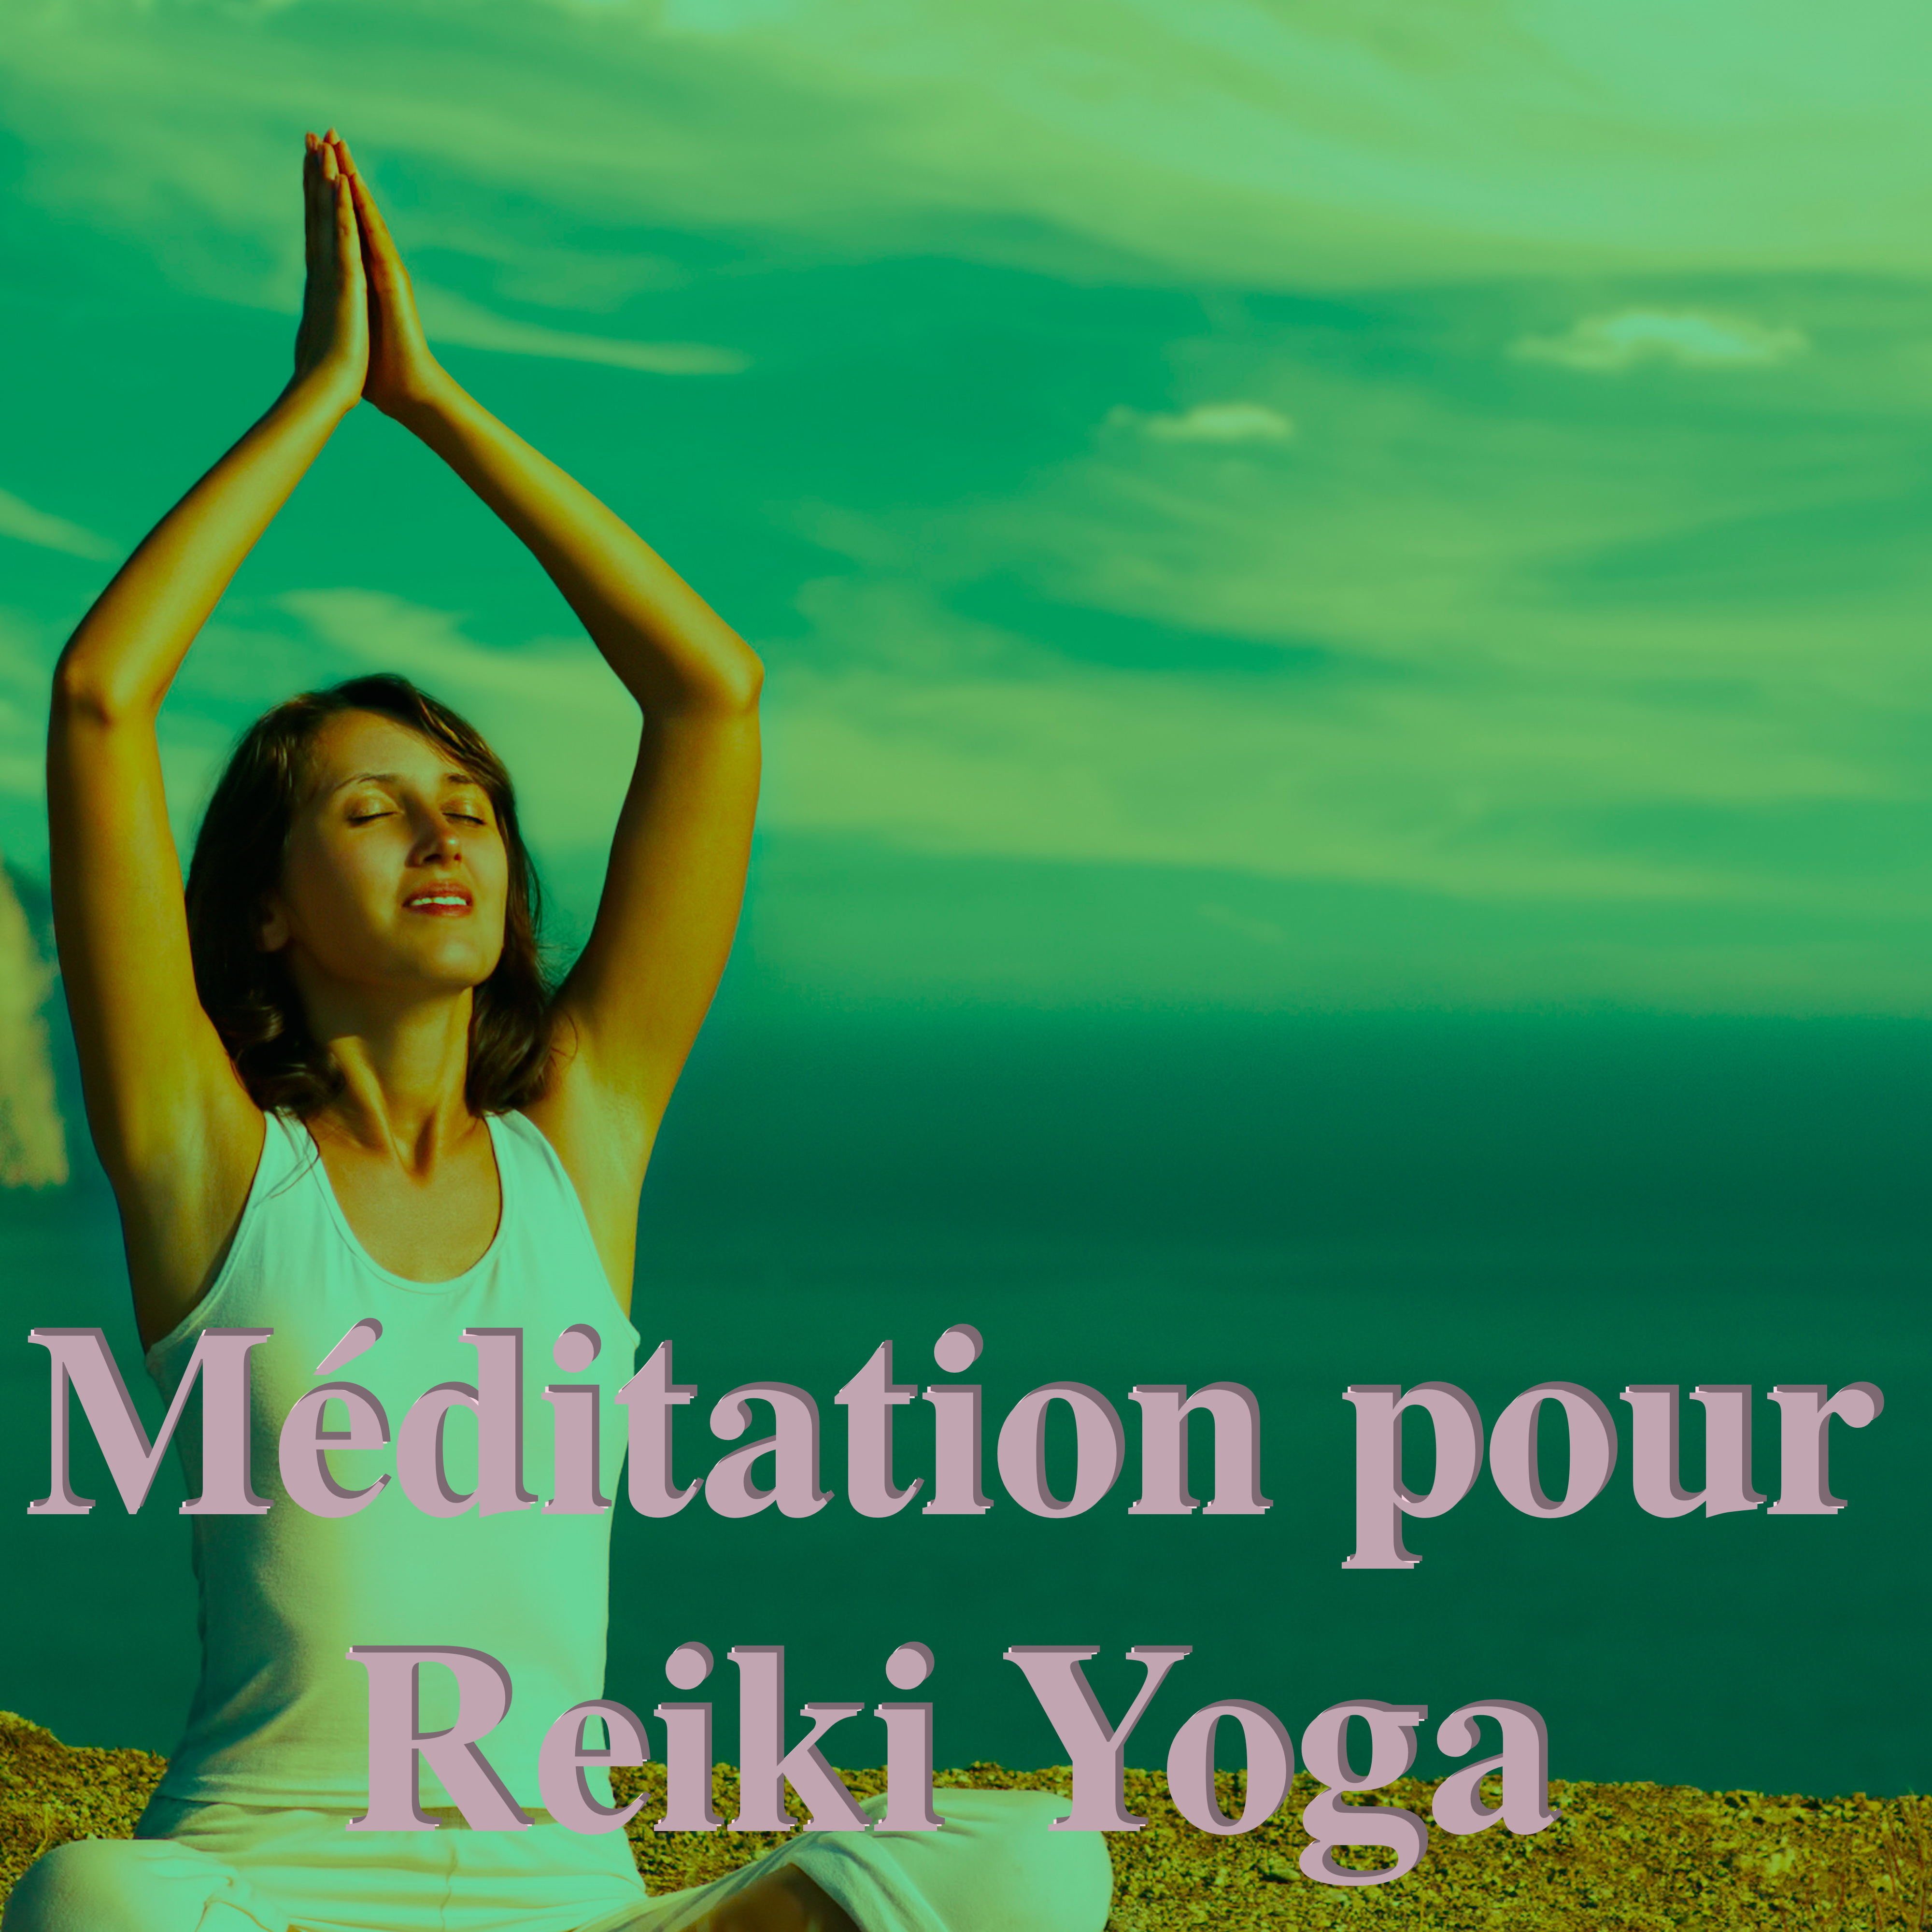 Me ditation pour Reiki Yoga: The rapie Rem pour Dormir, Induction de Sommeil Paisible et Profond, Musique Douce Piano pour Me ditation Zen Relaxant